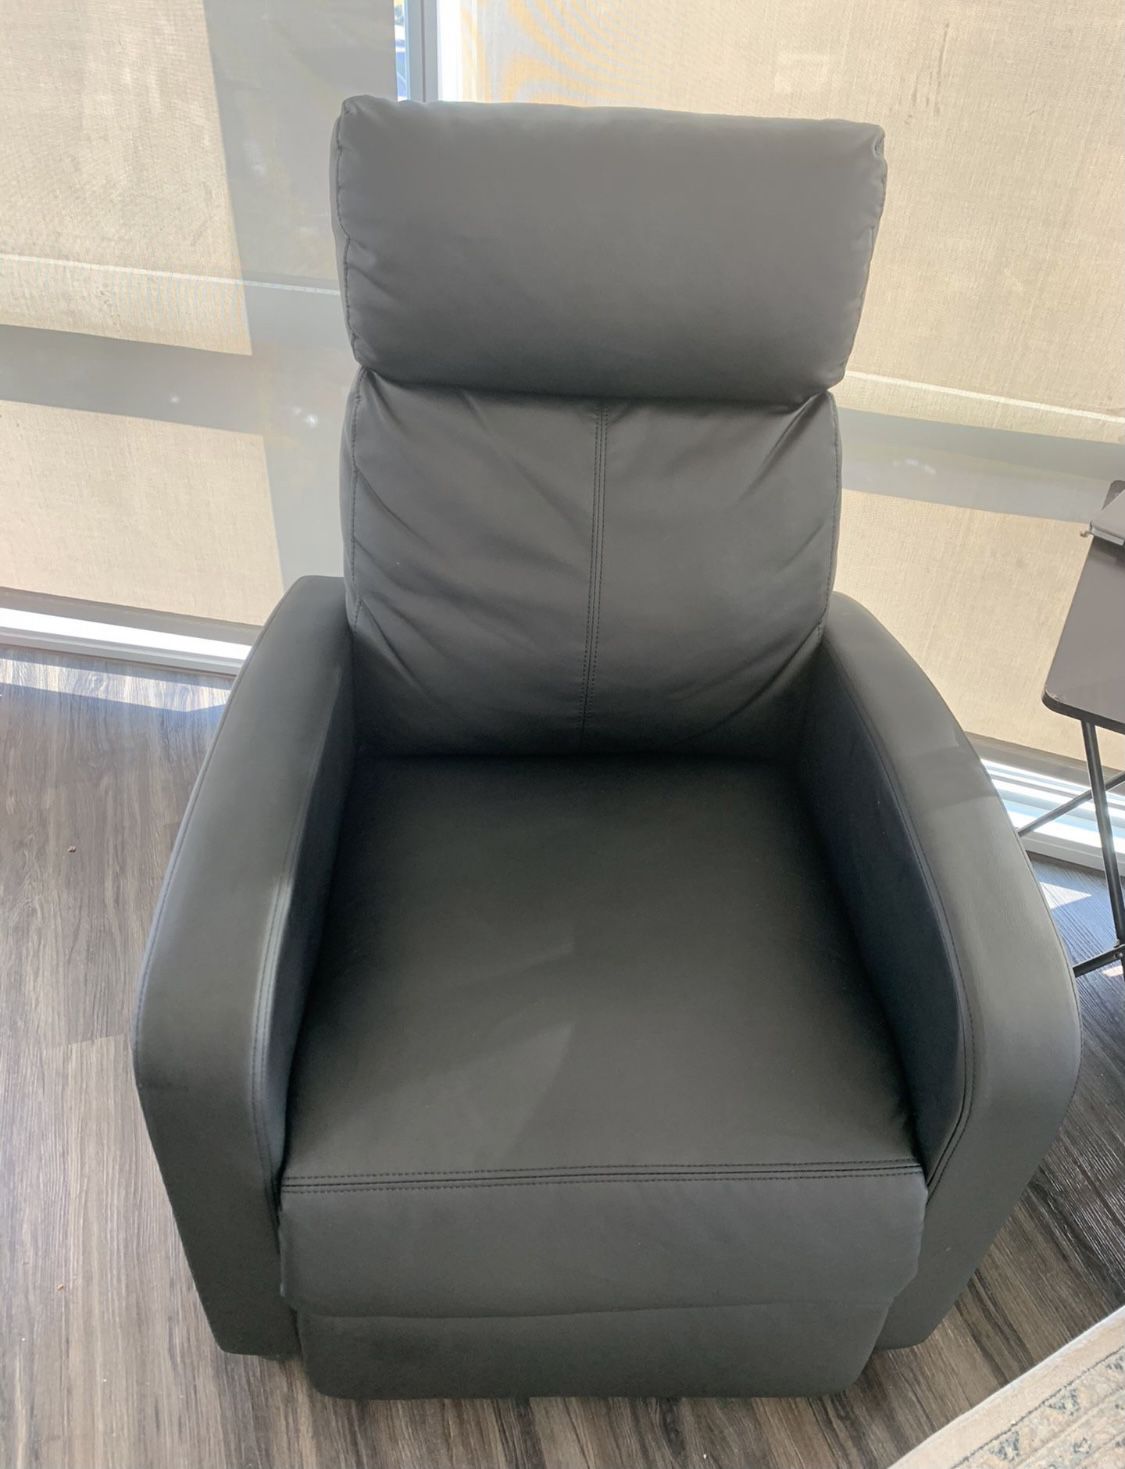 Recliner Chair $40